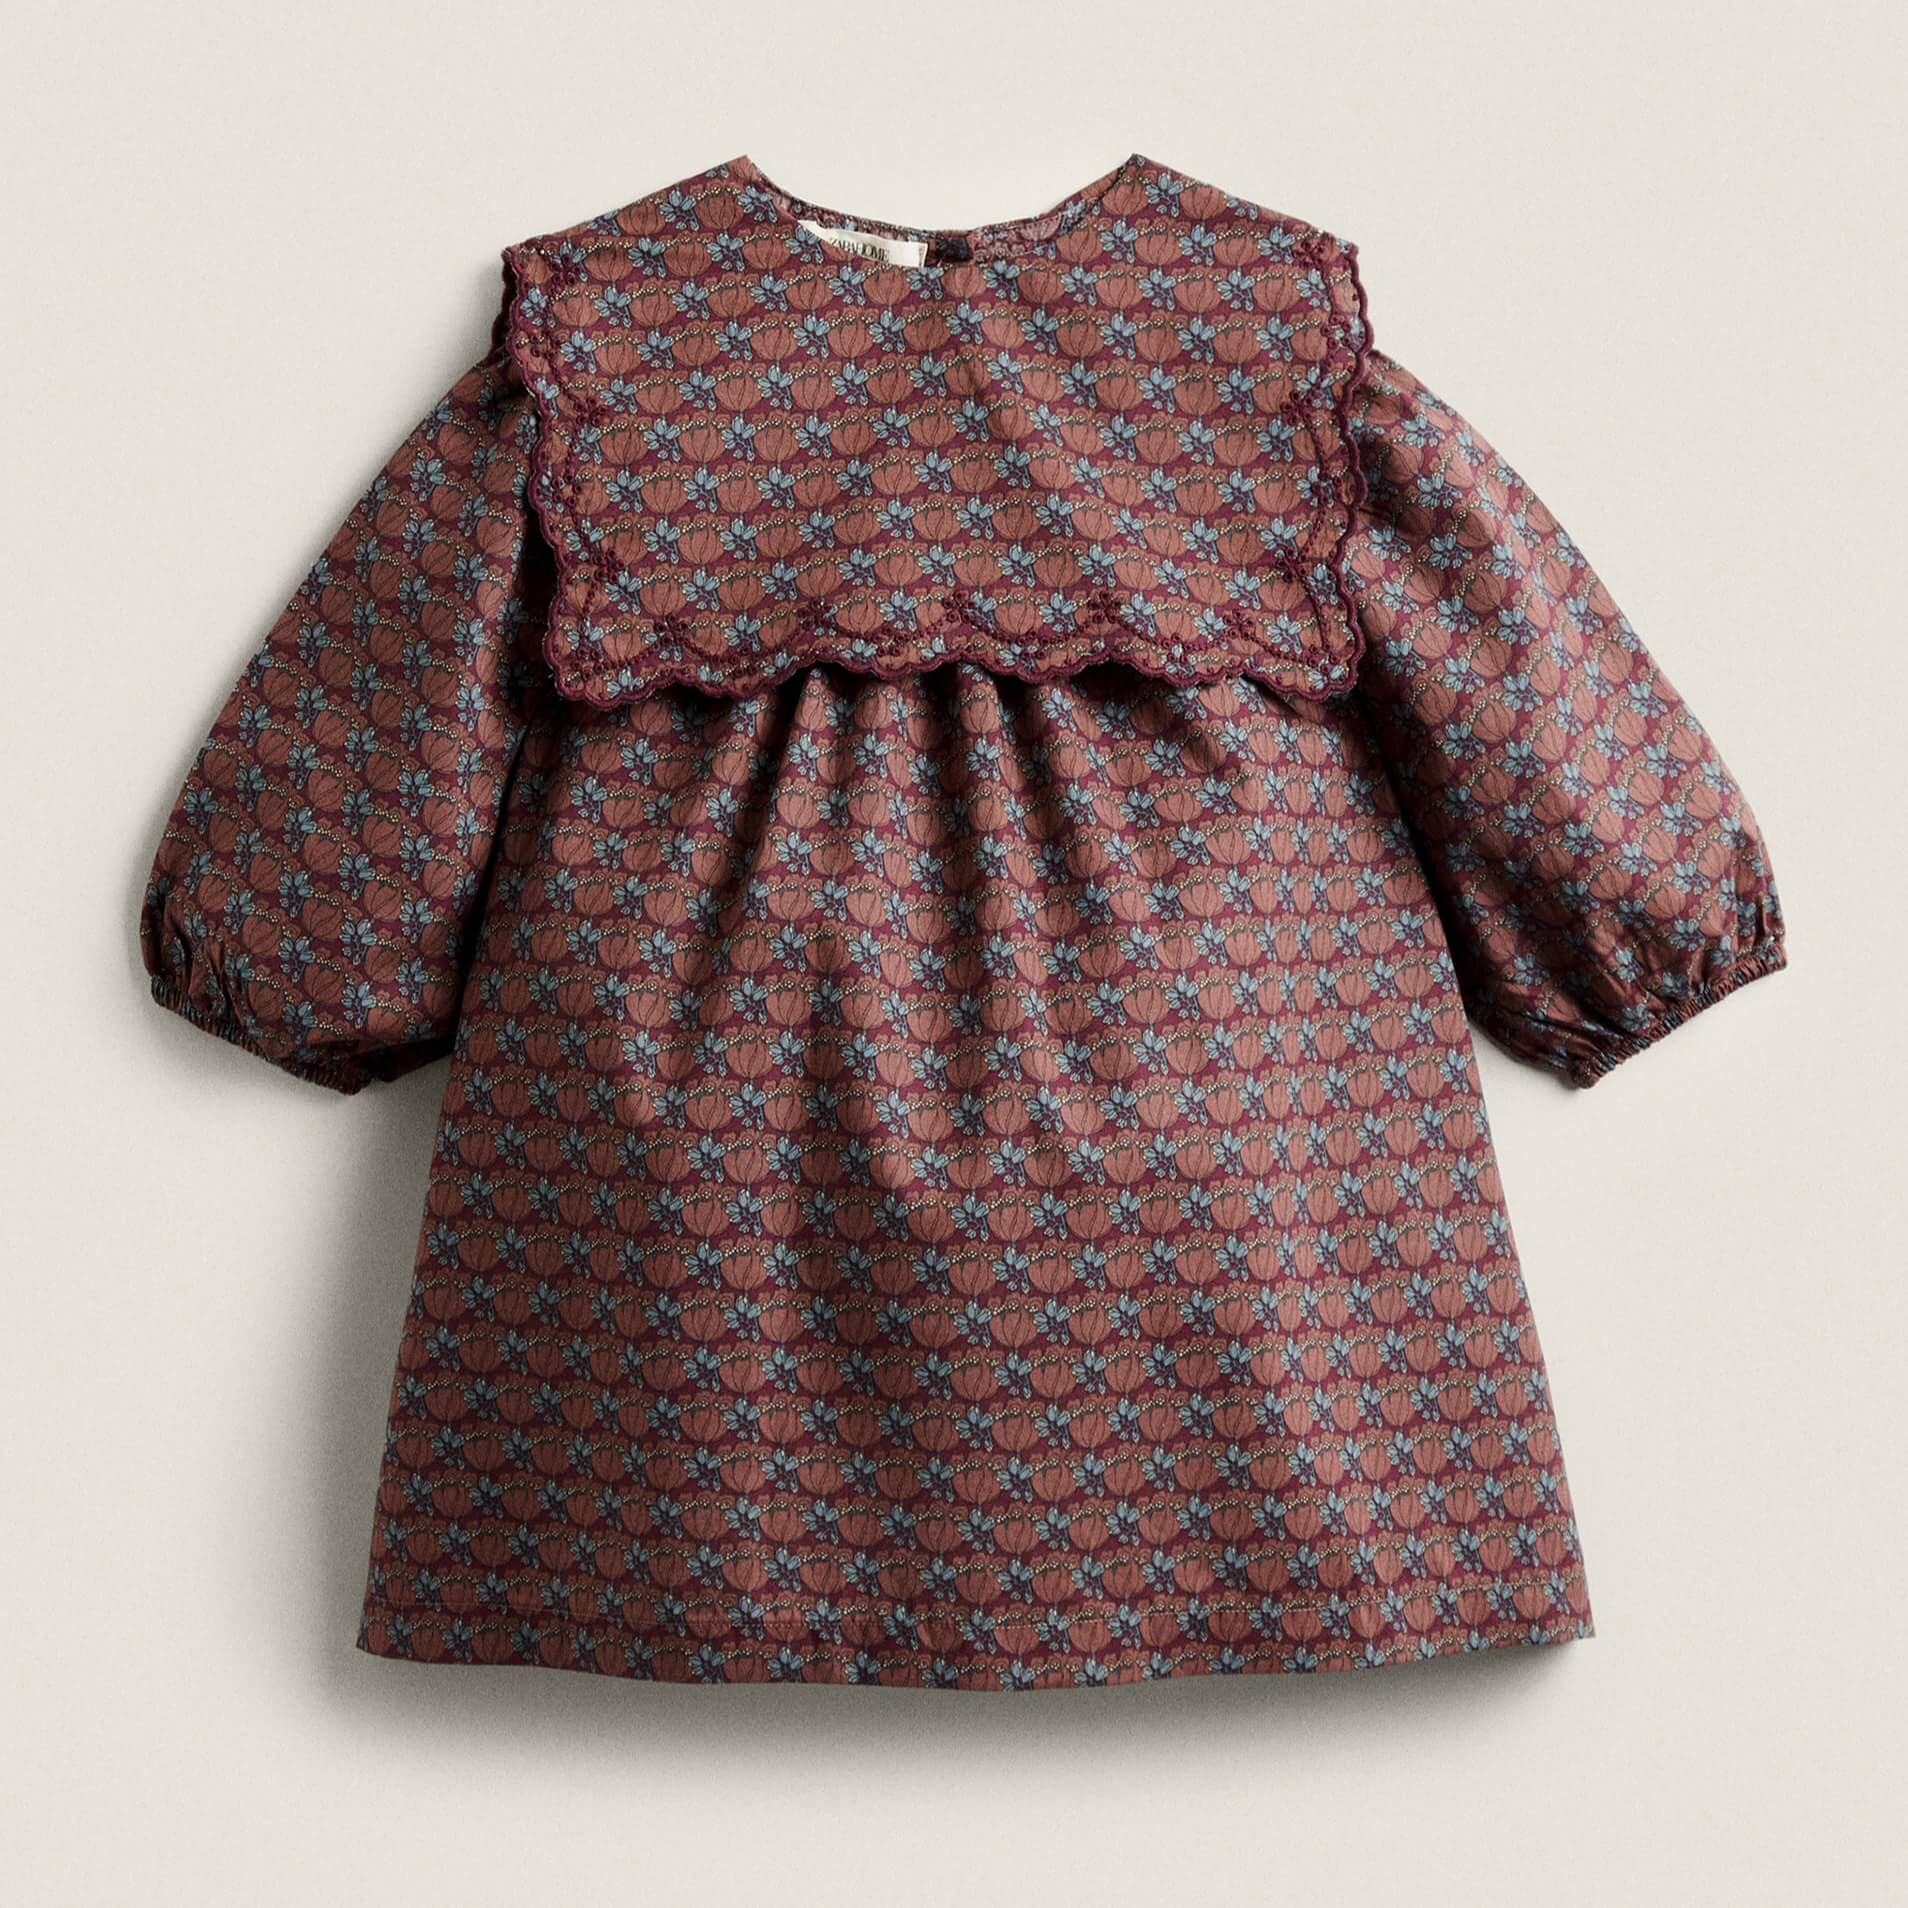 Платье Zara Home Made With Liberty Fabric Children’s женская однотонная рубашка с воротником питер пэн с кружевом